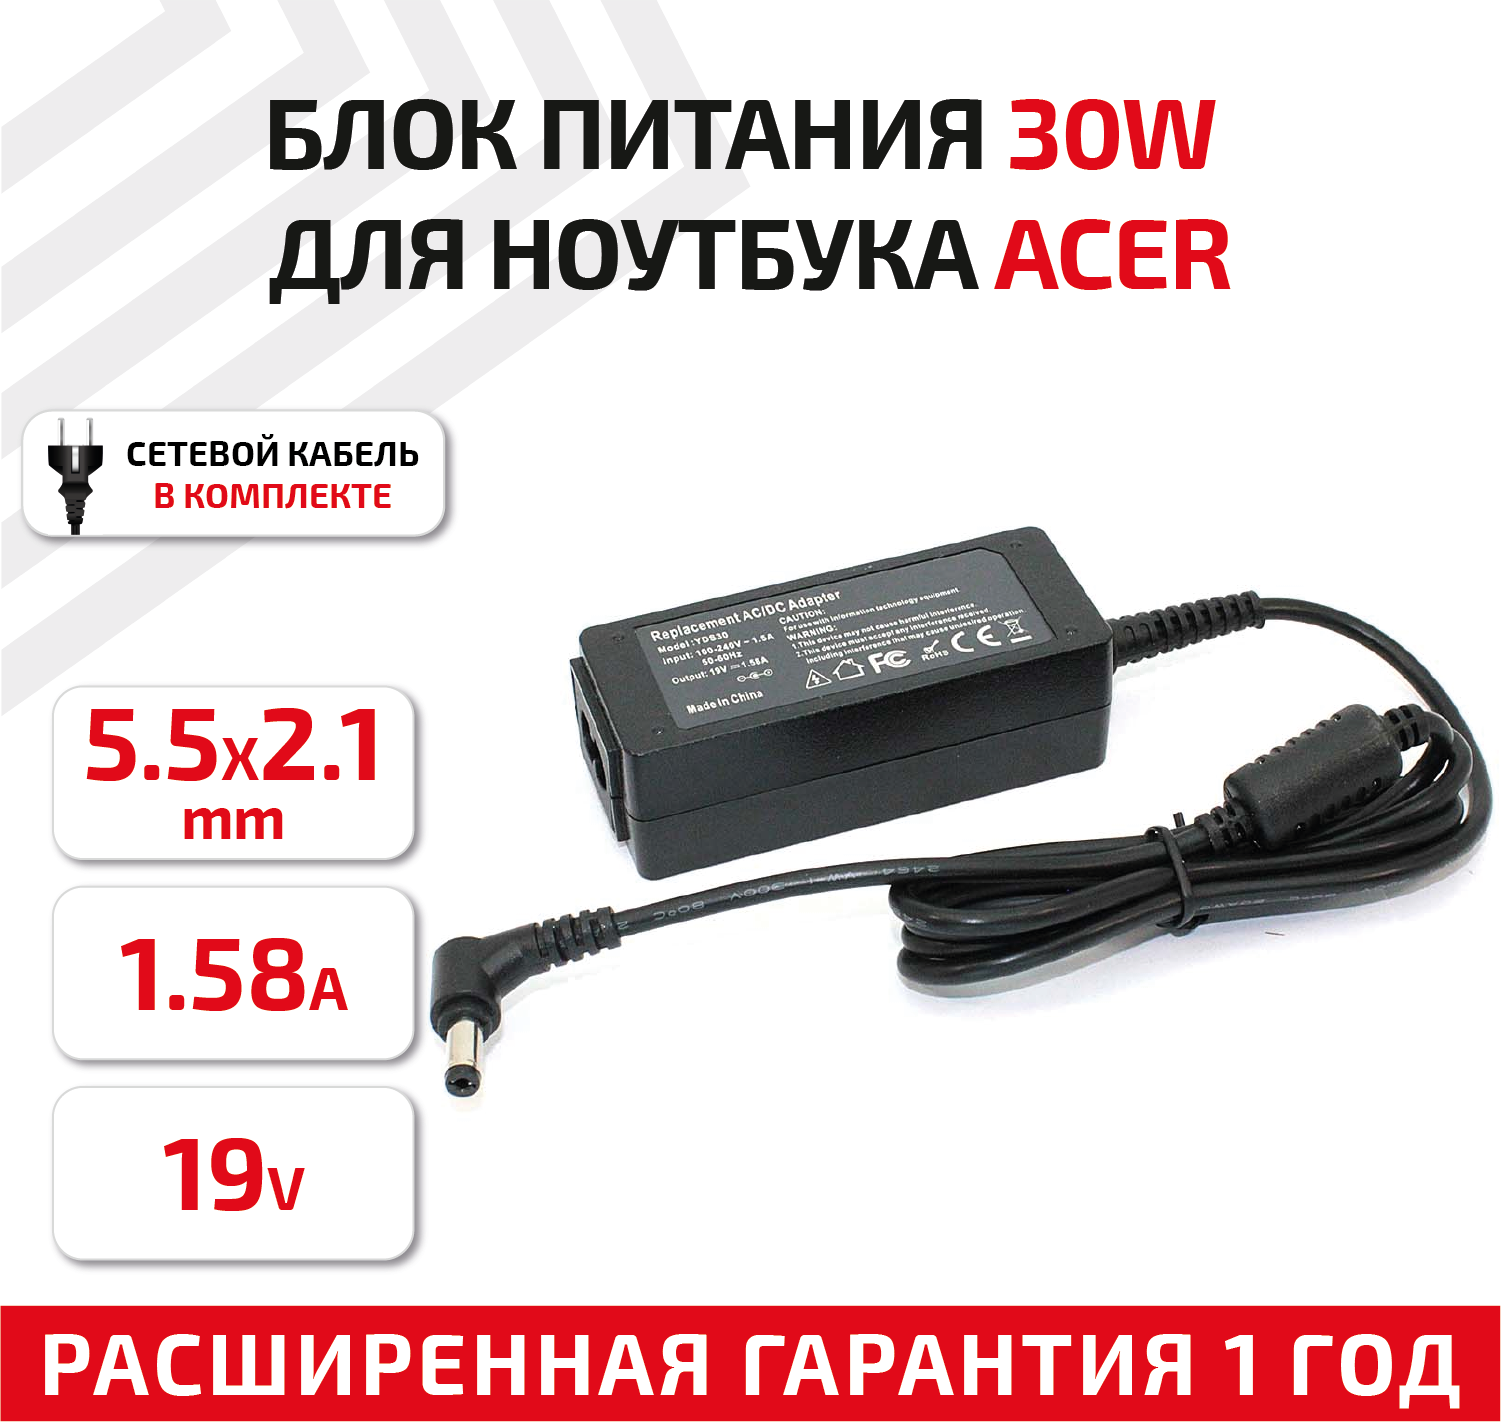 Зарядное устройство (блок питания/зарядка) для ноутбука Acer 19В, 1.58А, 5.5x2.1мм